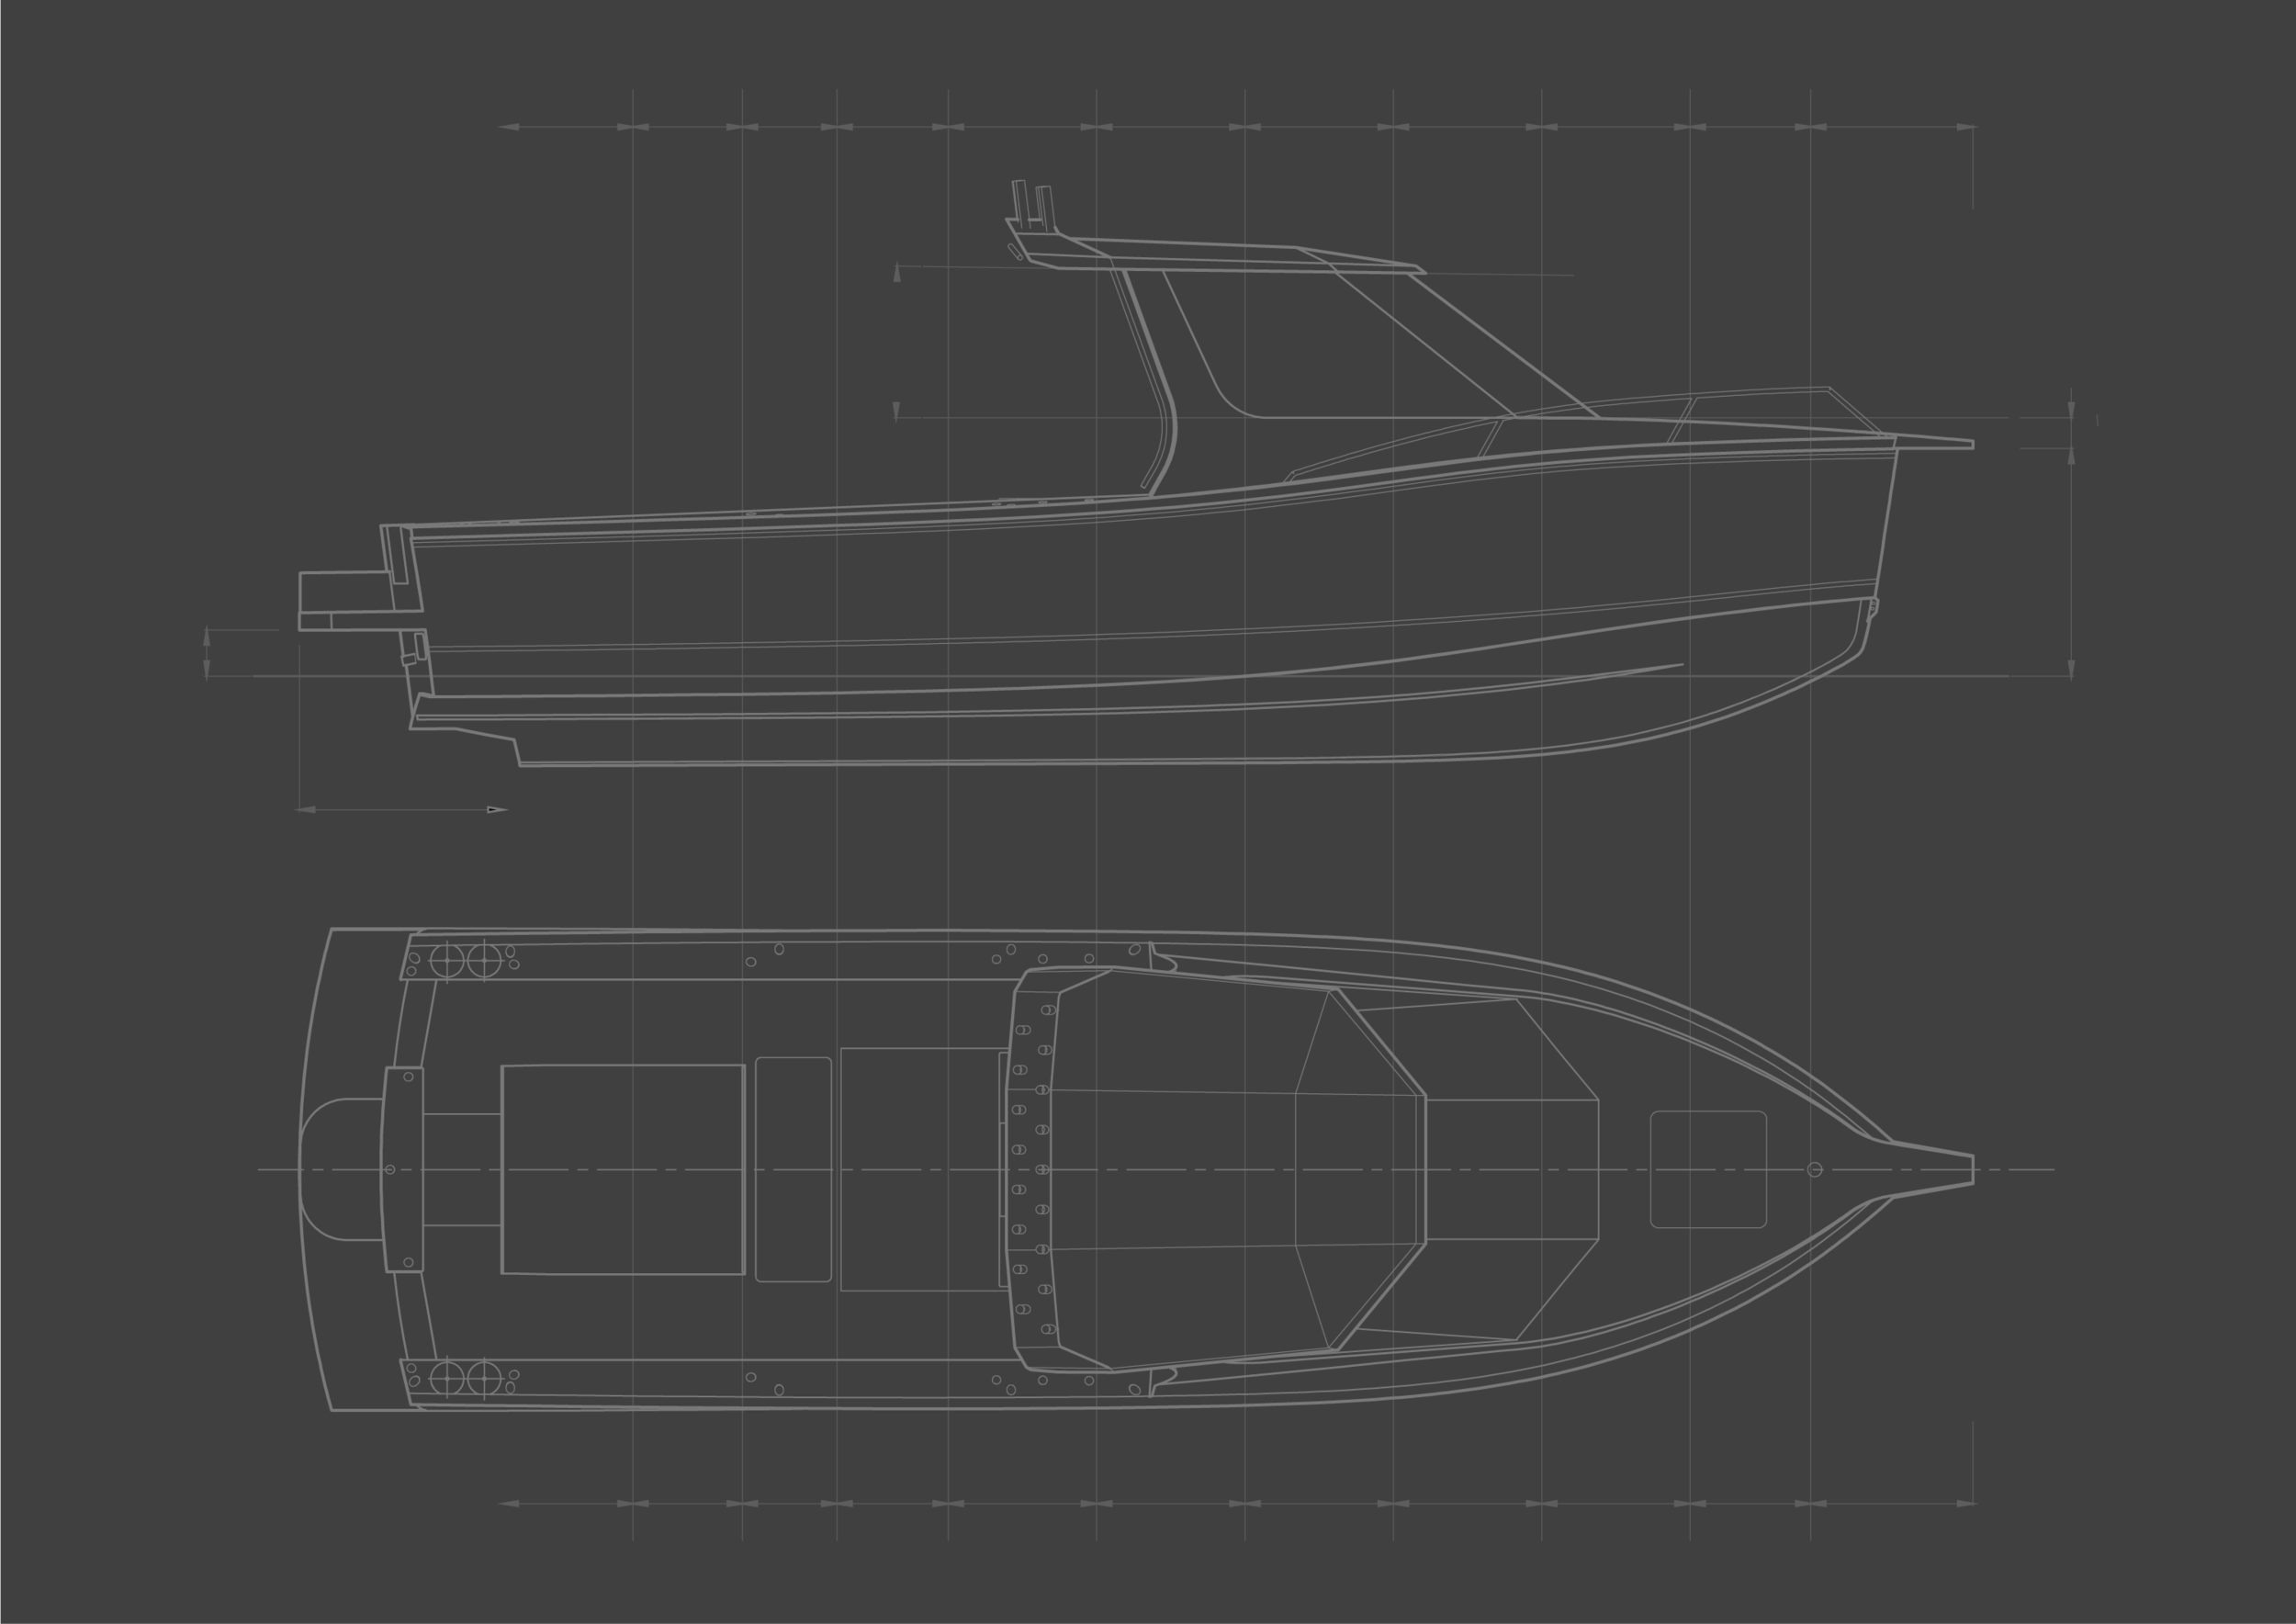 Design & Build — Innovision Boats